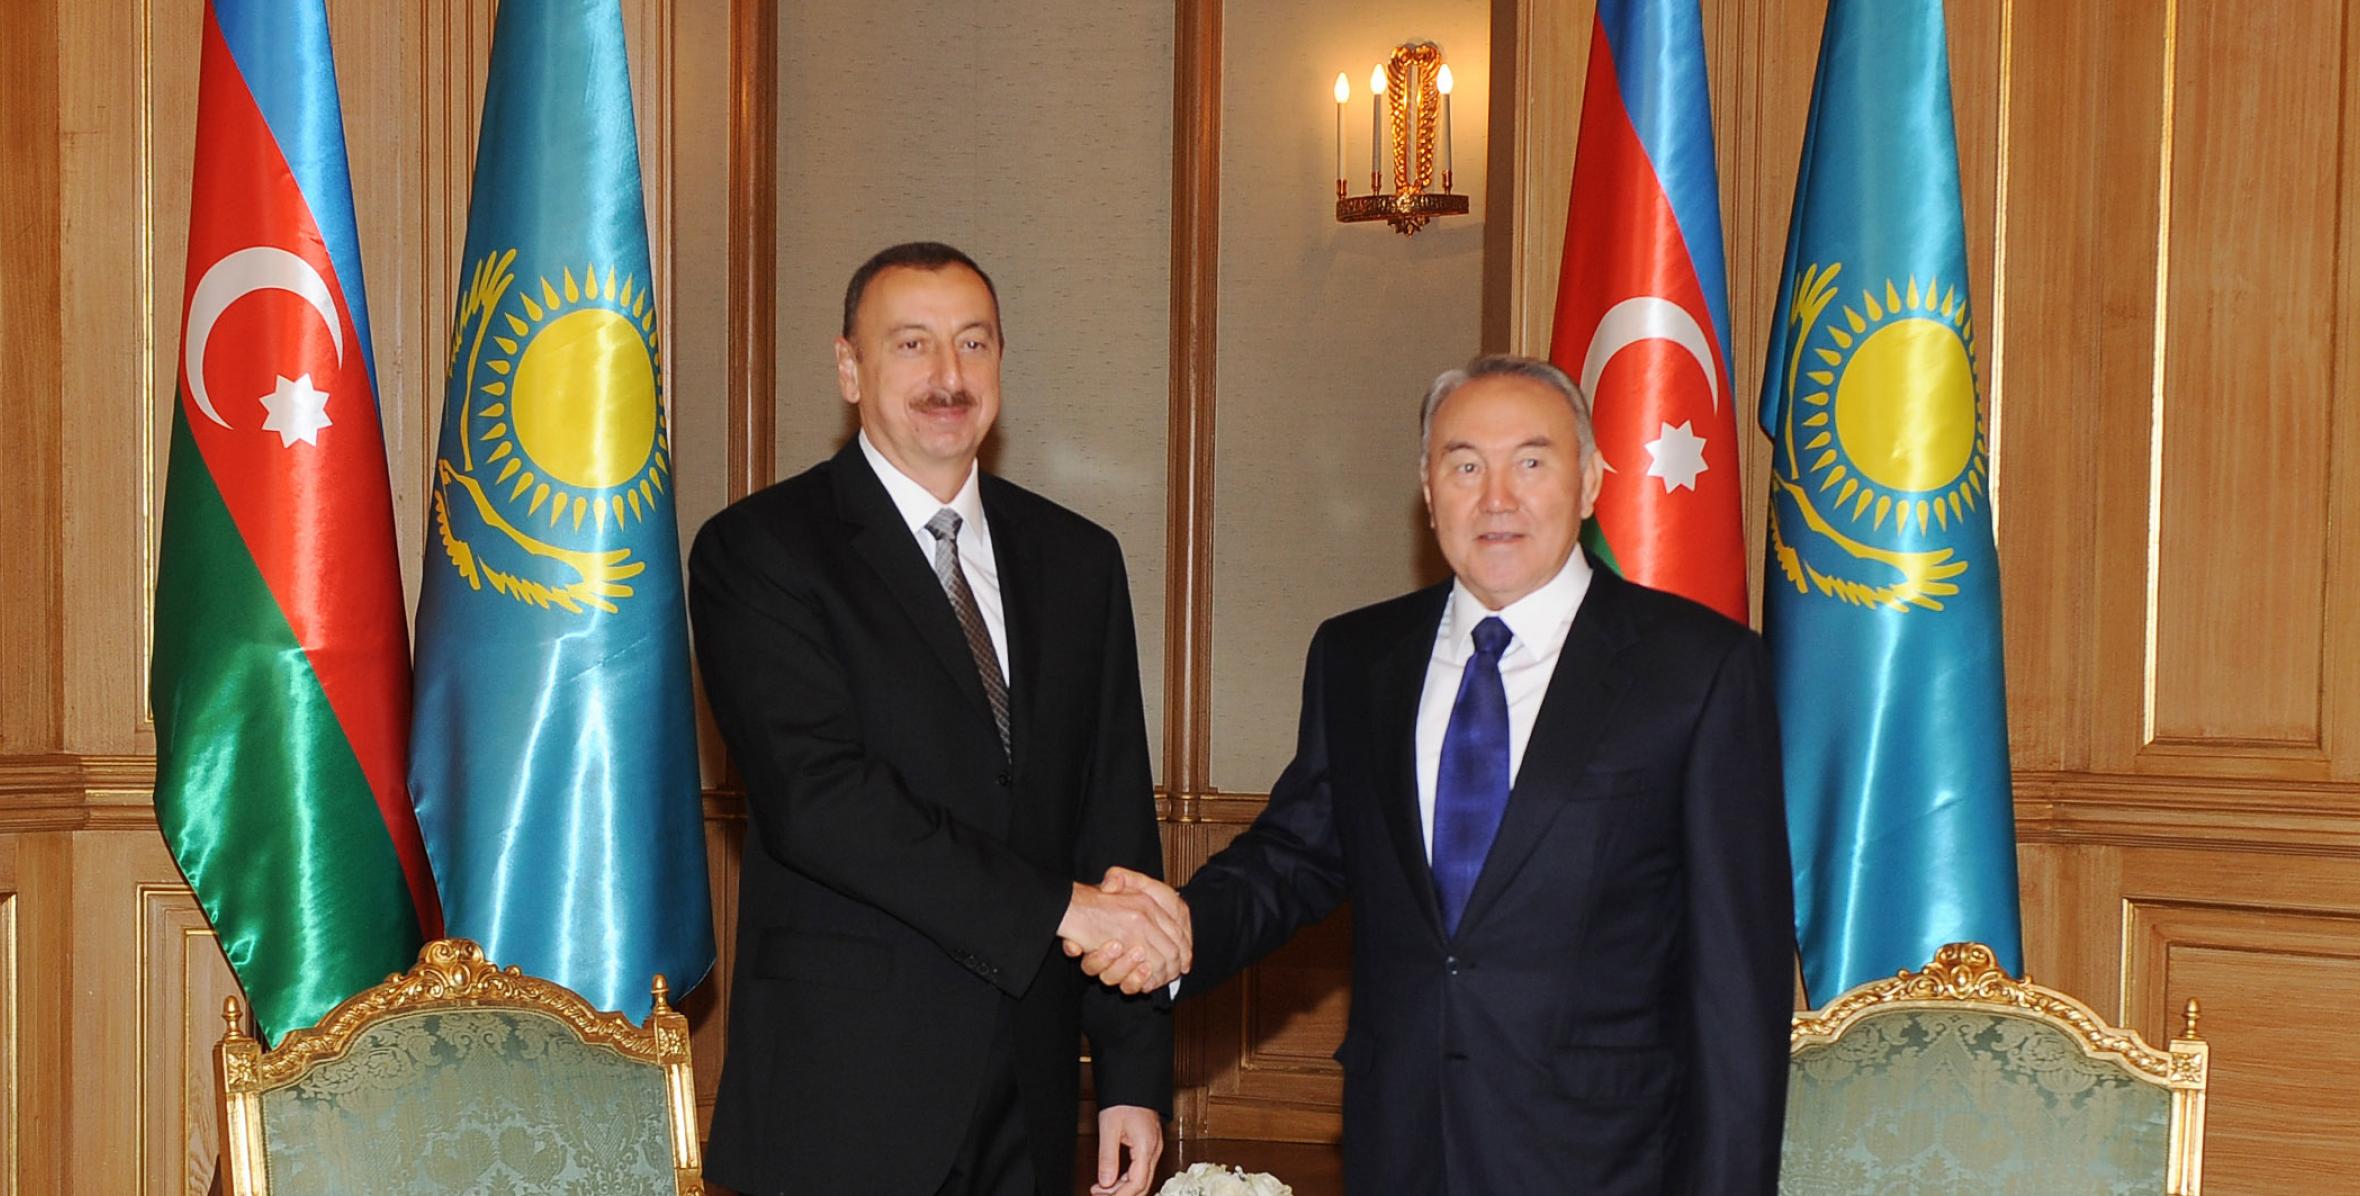 Состоялась встреча Ильхама Алиева и Президента Казахстана Нурсултана Назарбаева один на один